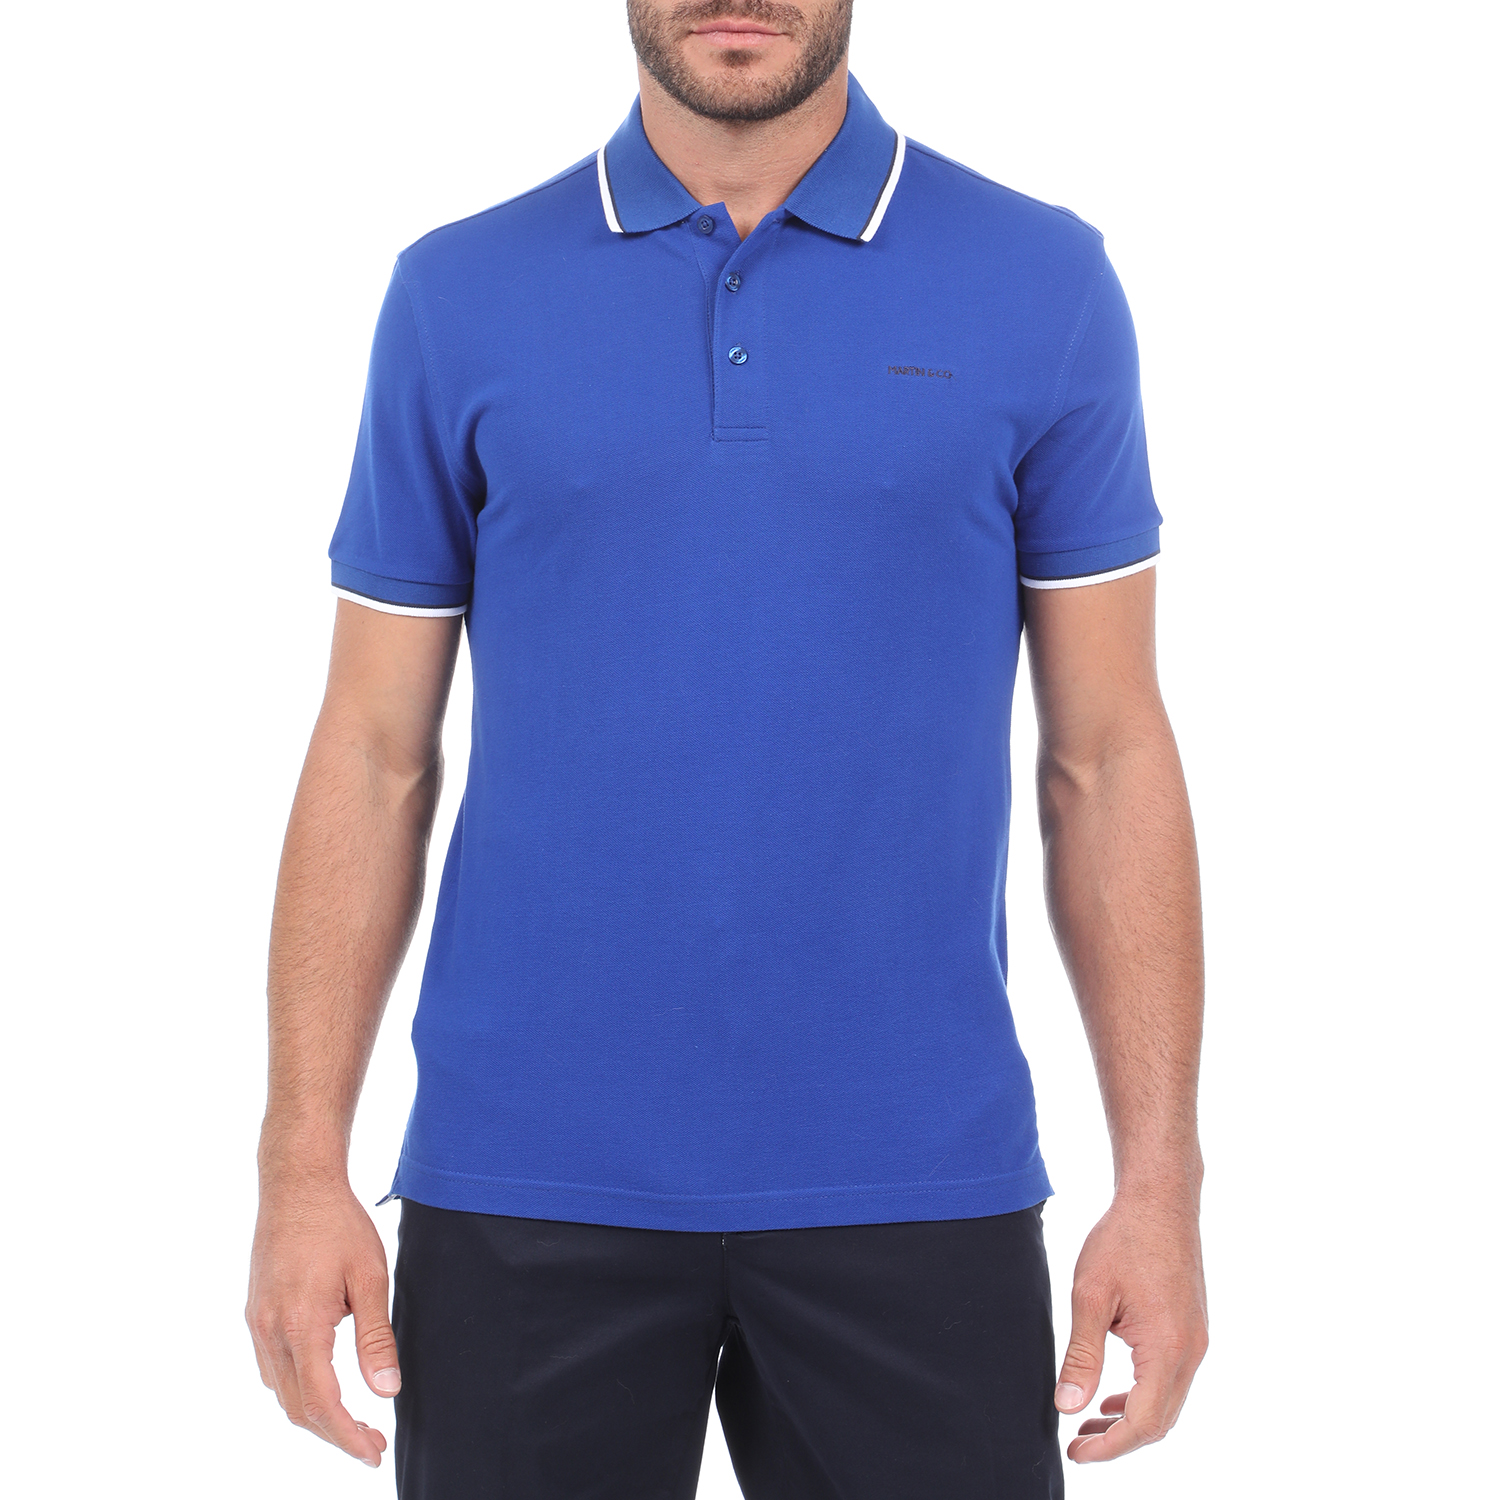 Ανδρικά/Ρούχα/Μπλούζες/Πόλο MARTIN & CO - Ανδρική polo μπλούζα MARTIN & CO μπλε